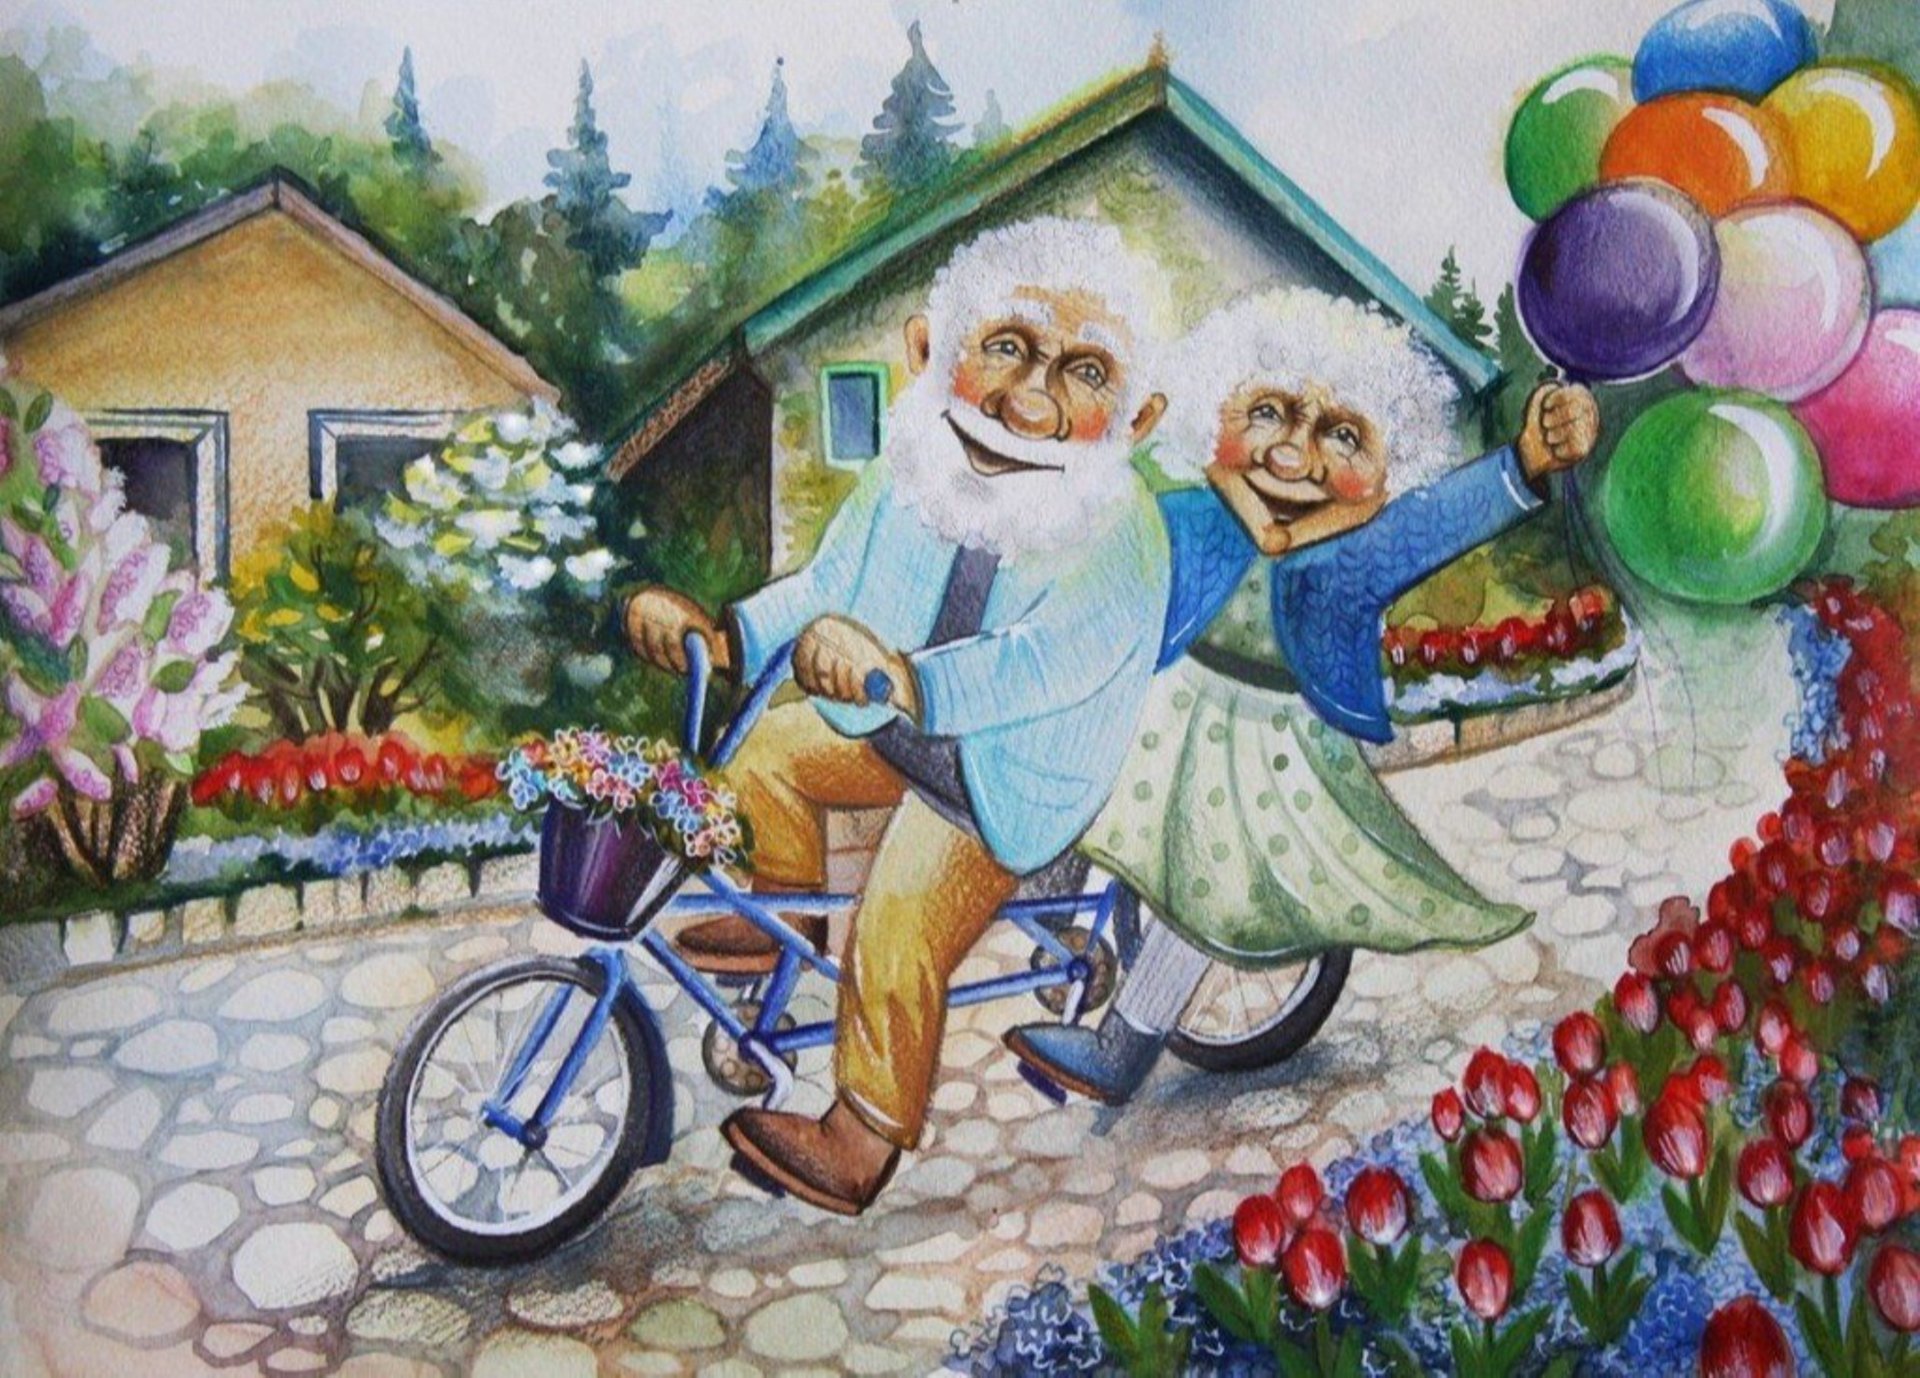 Смешные картинки внуку. Открытки для пожилых людей. Счастливые старики иллюстрации. Картины пожилых людей. Бабушка рядышком с дедушкой.